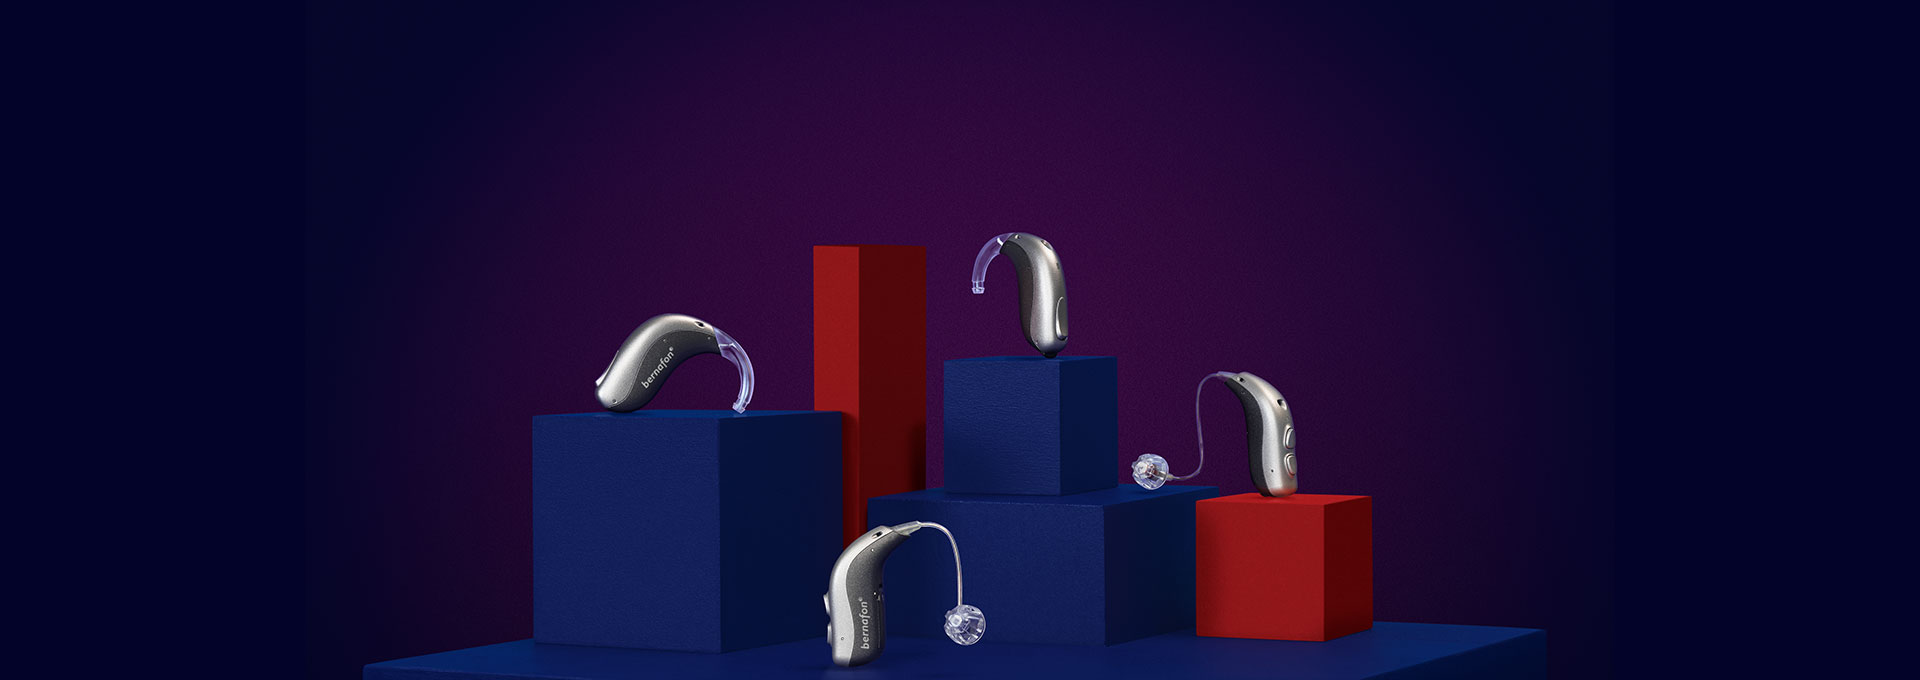 4 aides auditives Bernafon Alpha (miniBTE T R, miniRITE T R, miniBTE T, miniRITE T) sur des cubes rouges et bleus à fond violet